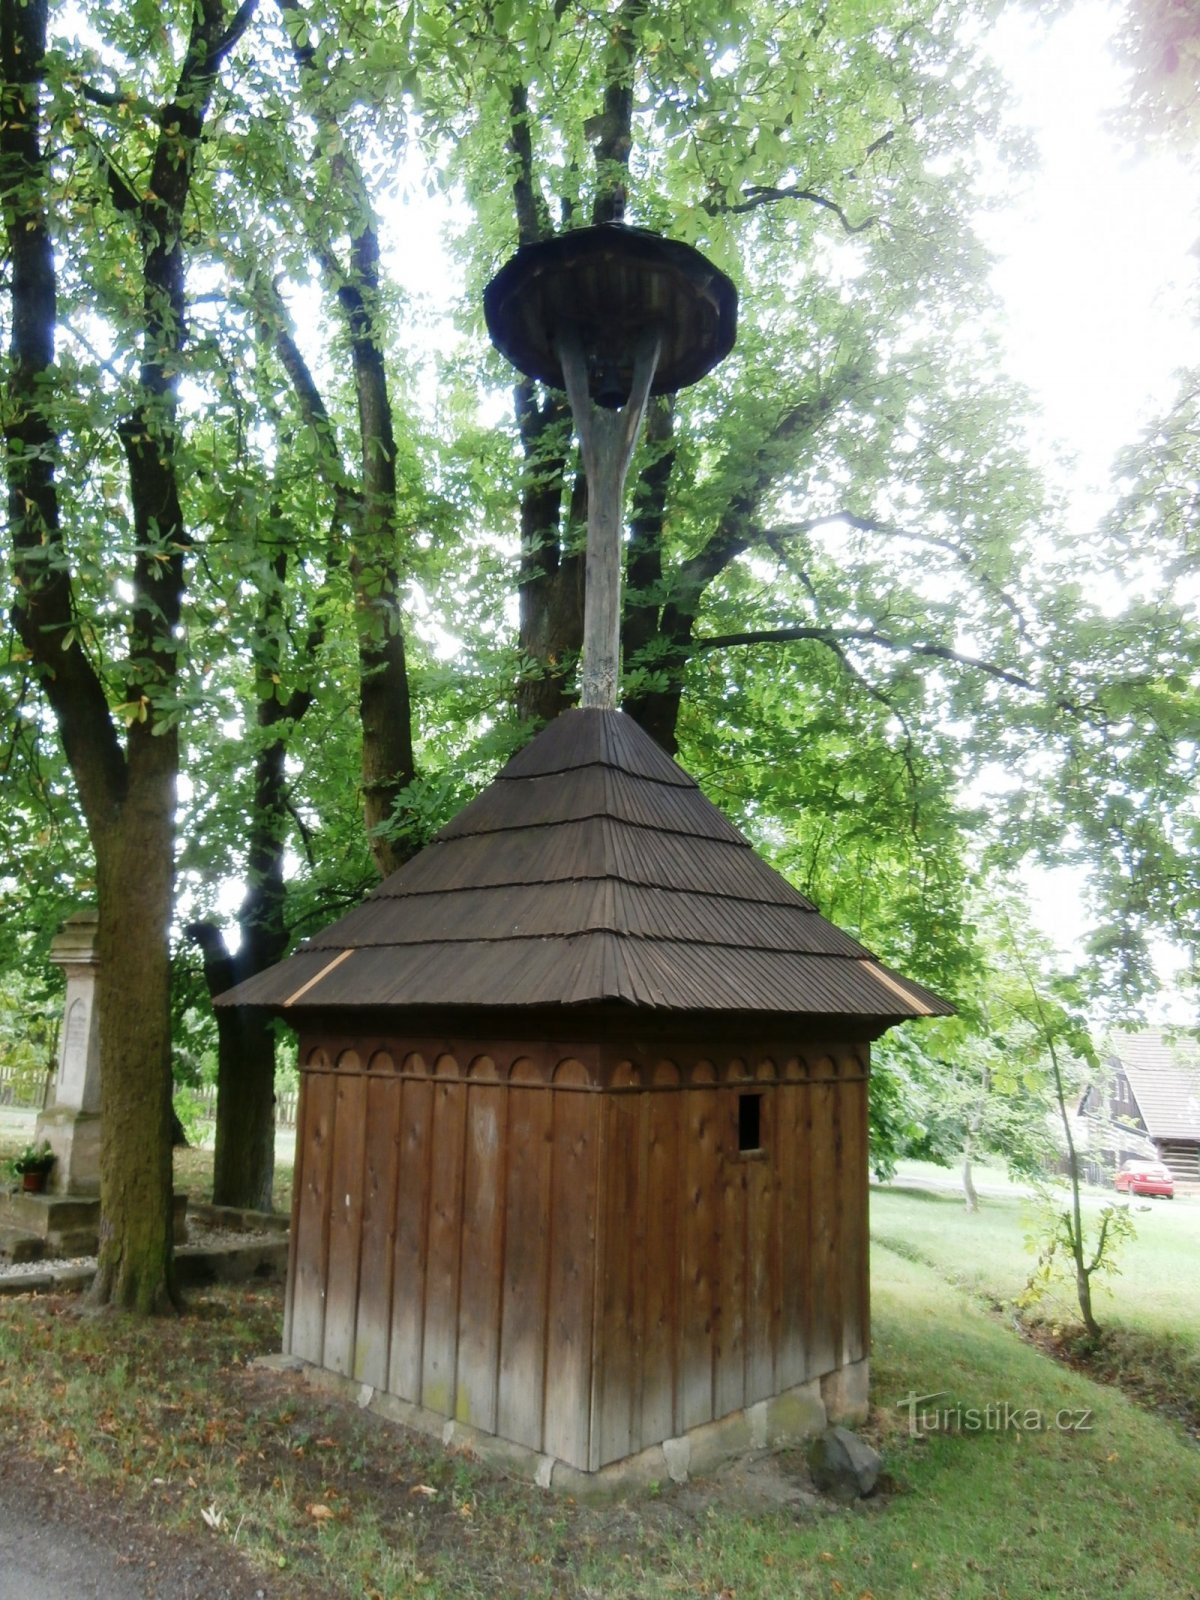 2. ボスニアの入植。 ムジュスキー村の一部 - 19 世紀初頭の木製の鐘楼